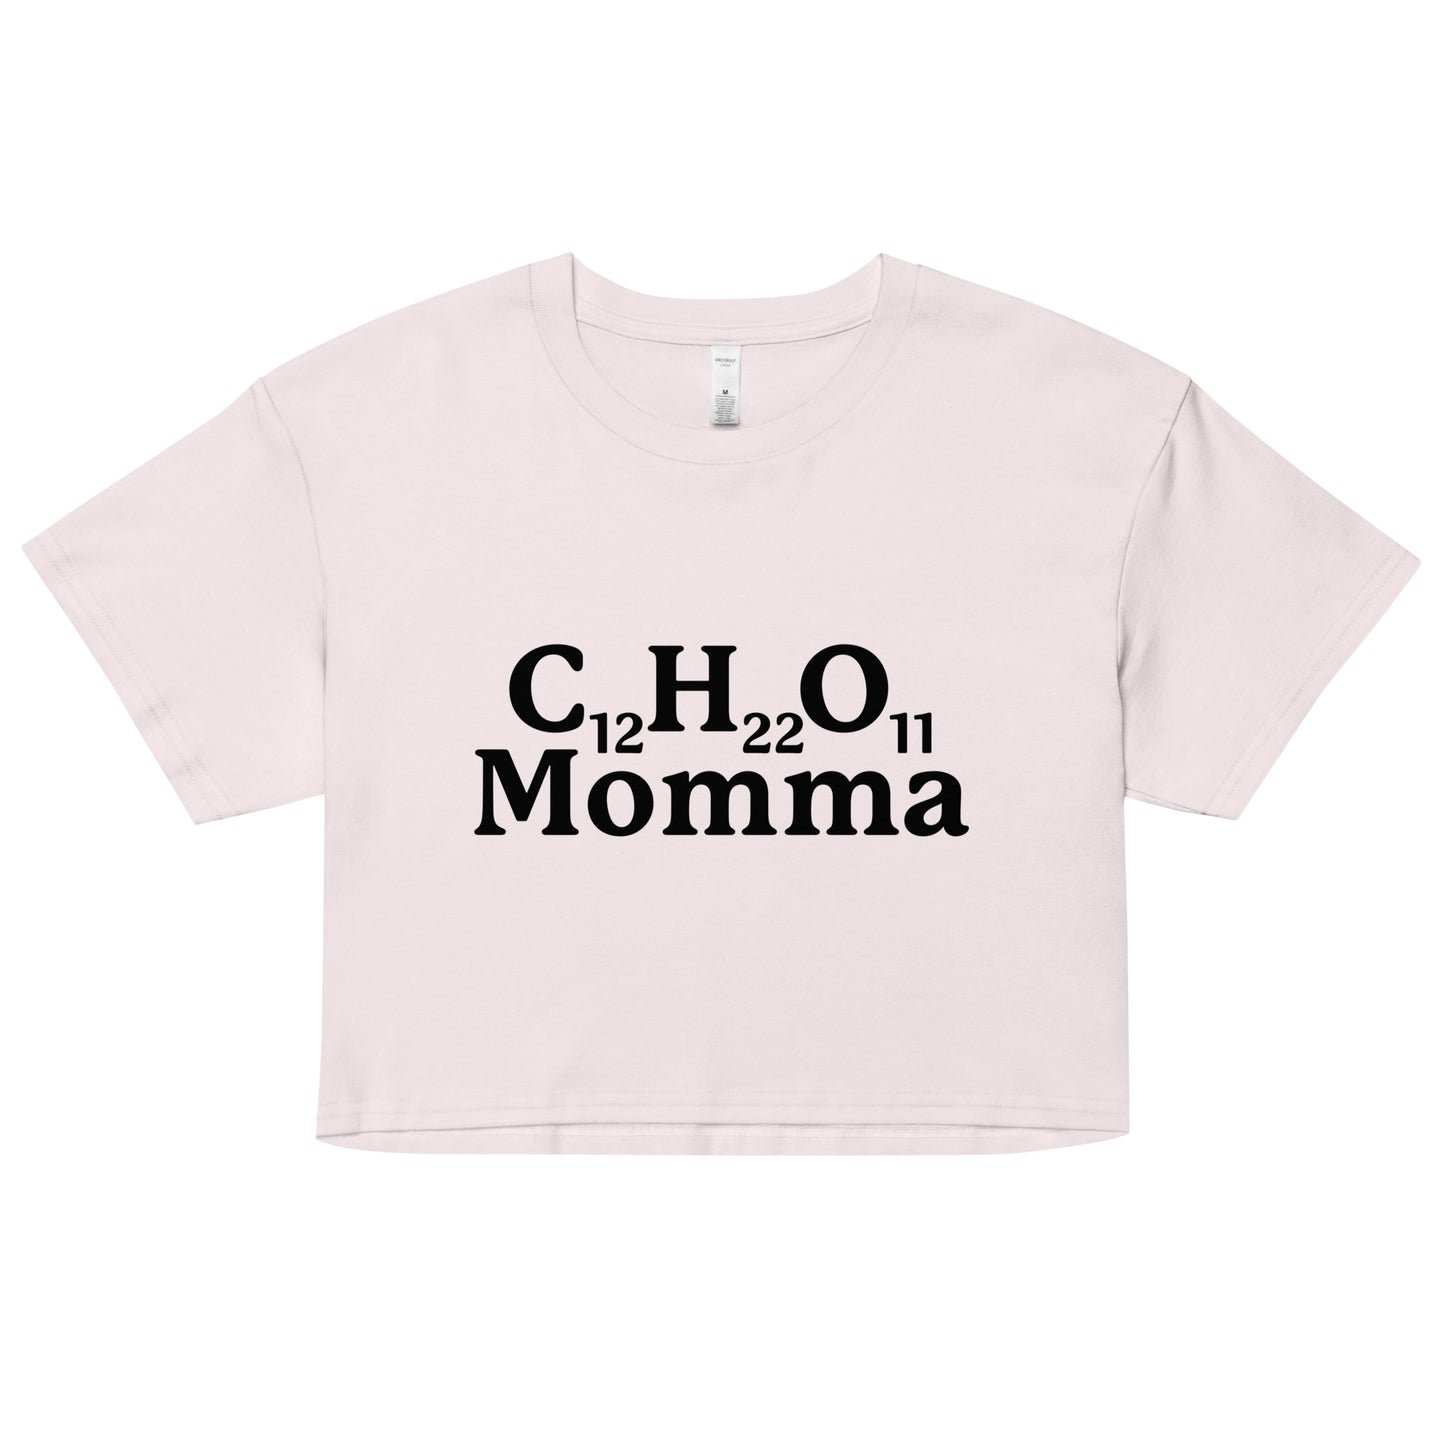 C12H22O11 Momma (Sugar Momma) crop top